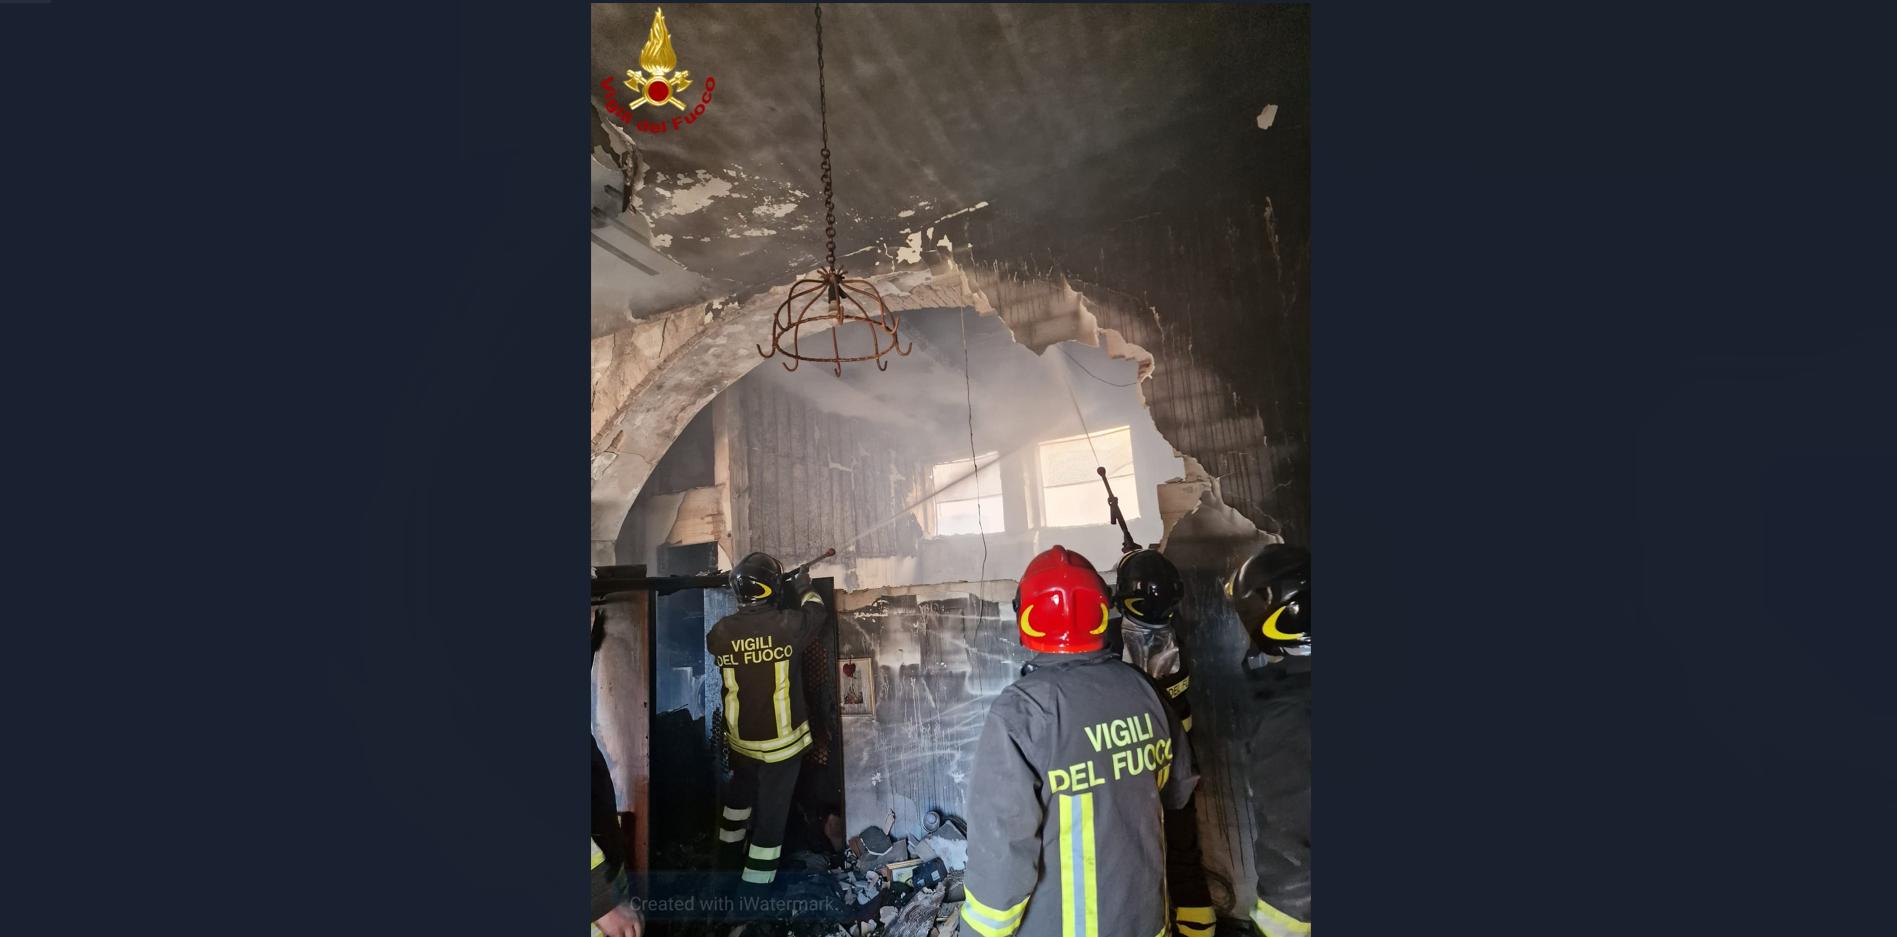 Incendio in un appartamento a Tinchi, intervento dei Vigili del fuoco